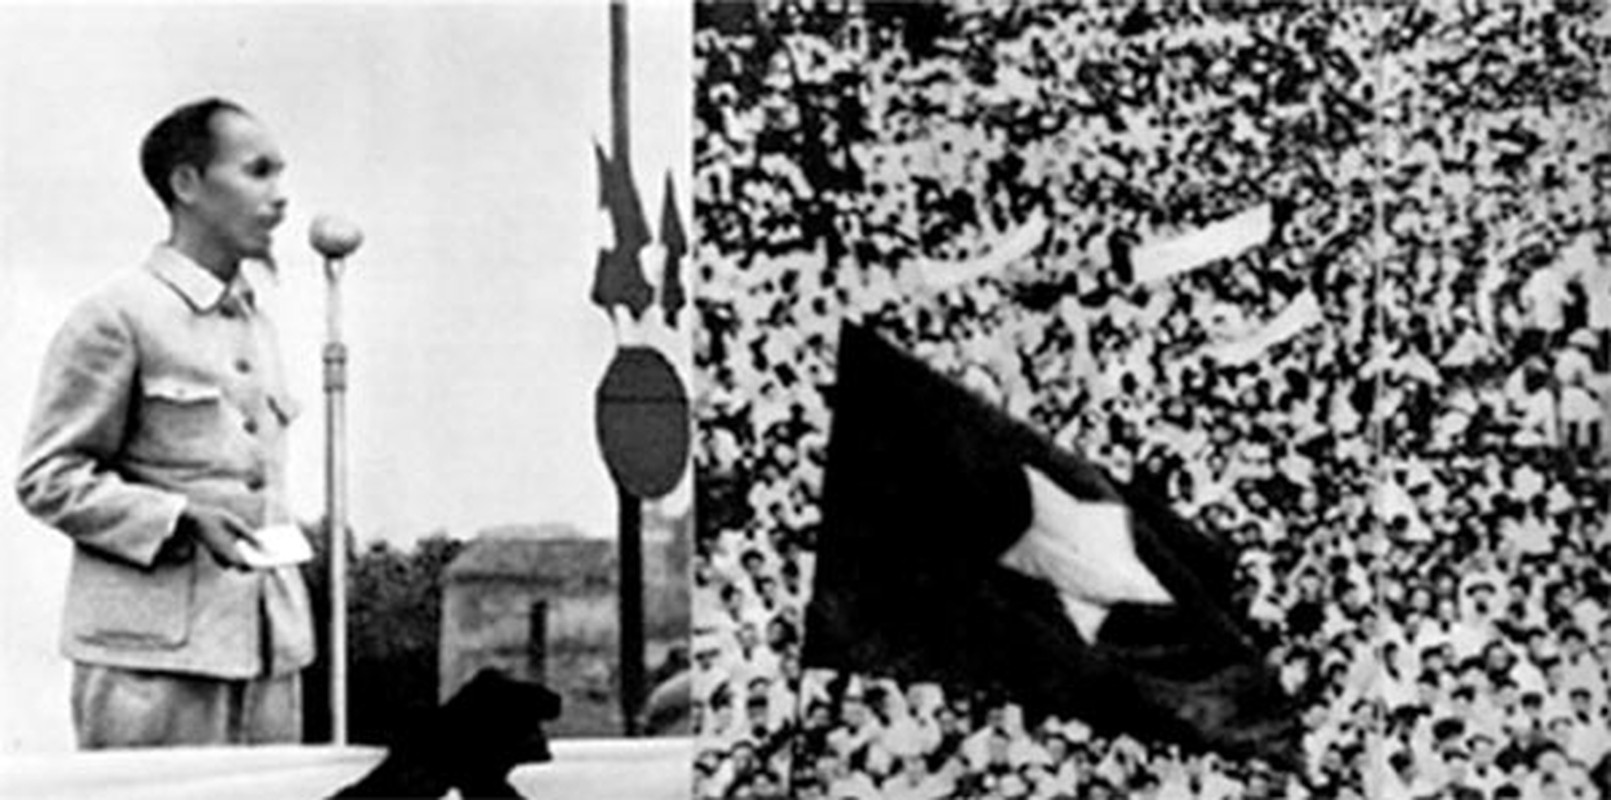 Bat mi nhung dieu thu vi ve ngay 2/9/1945-Hinh-2